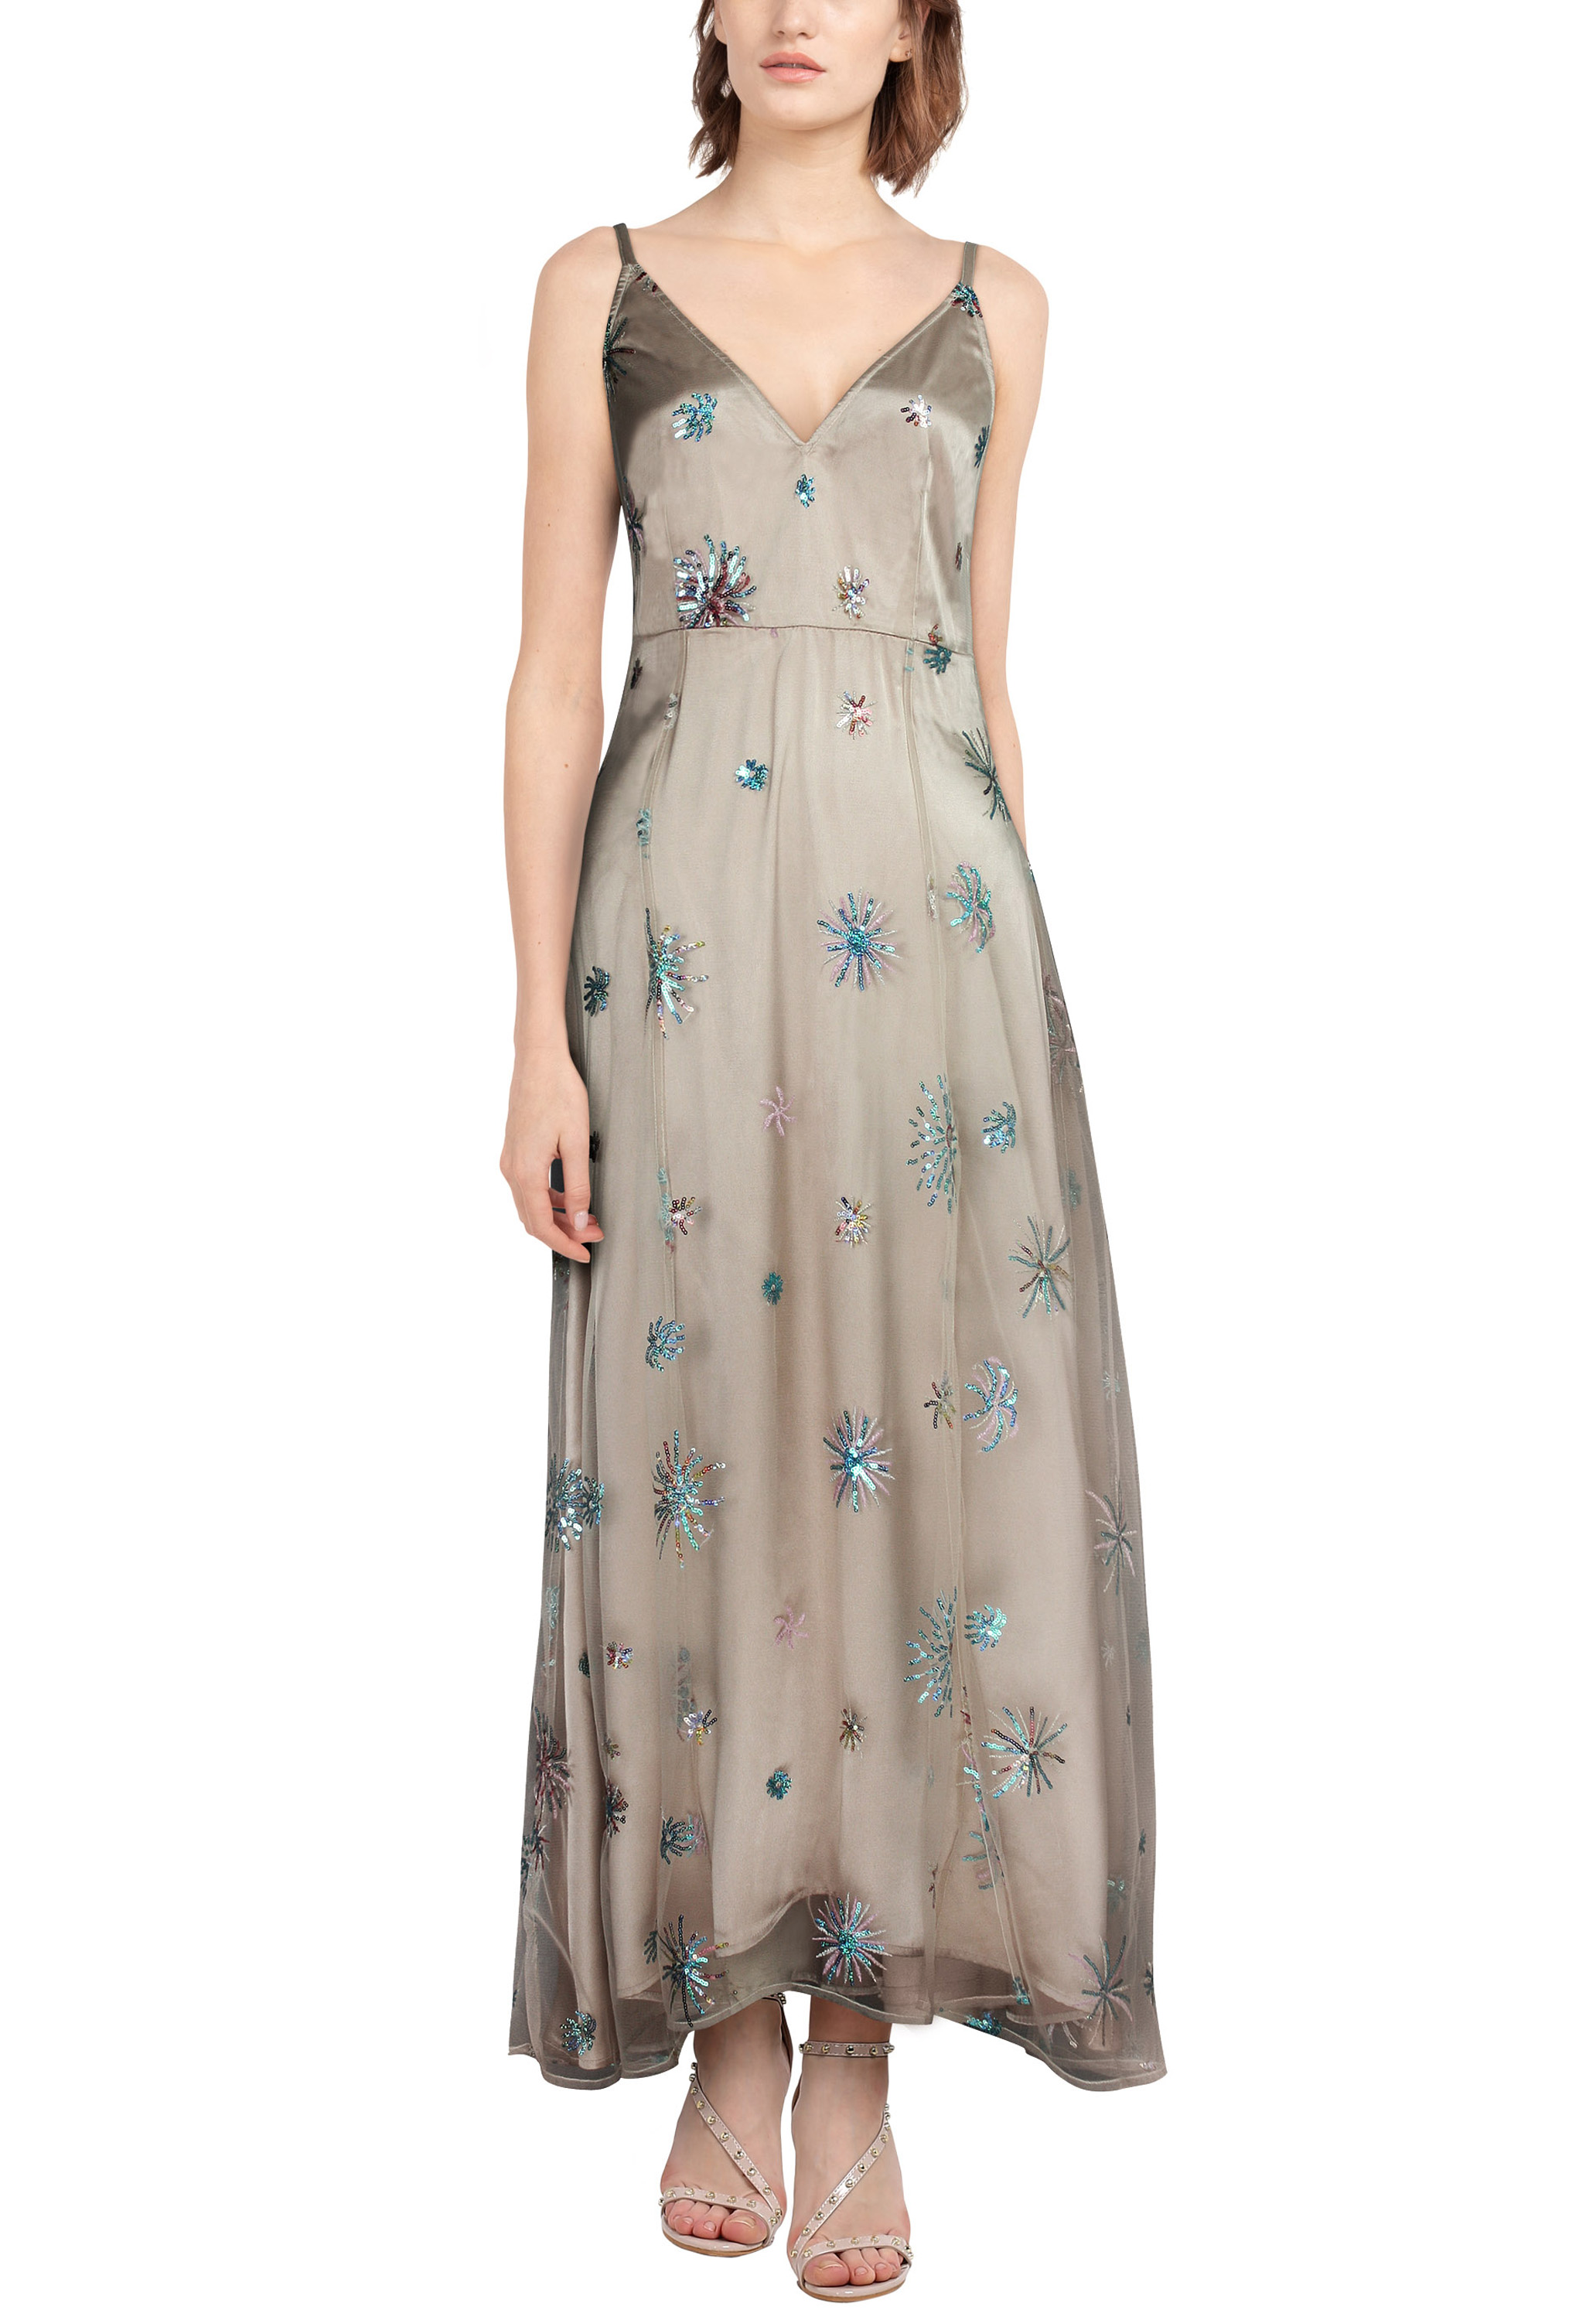 Sequin Embellished Dress